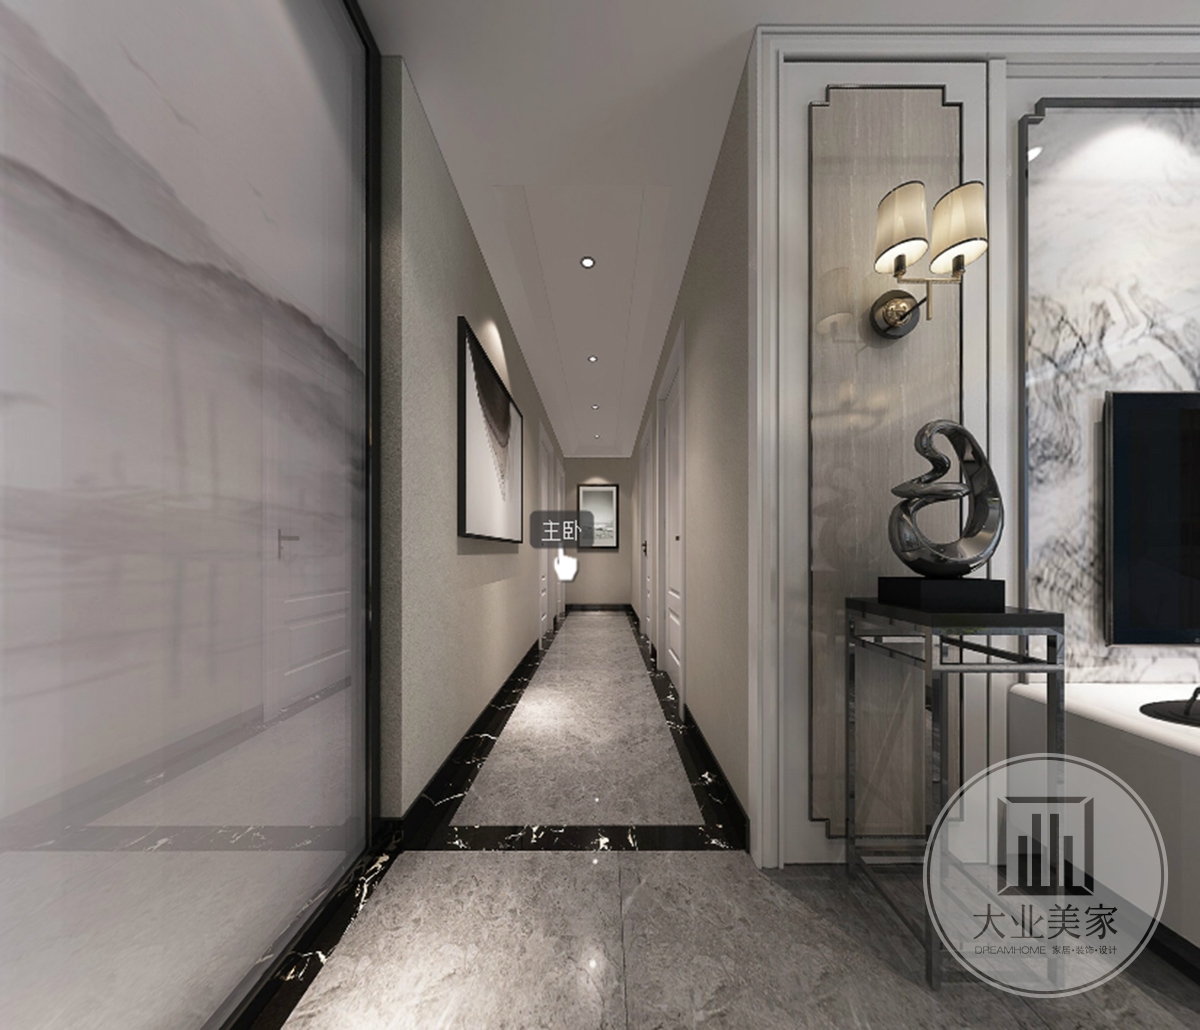 走廊效果图：走廊地面采用大理石配黑边设计，墙面用黑白装饰挂画搭配在灰色墙面上，让墙面不在单调。